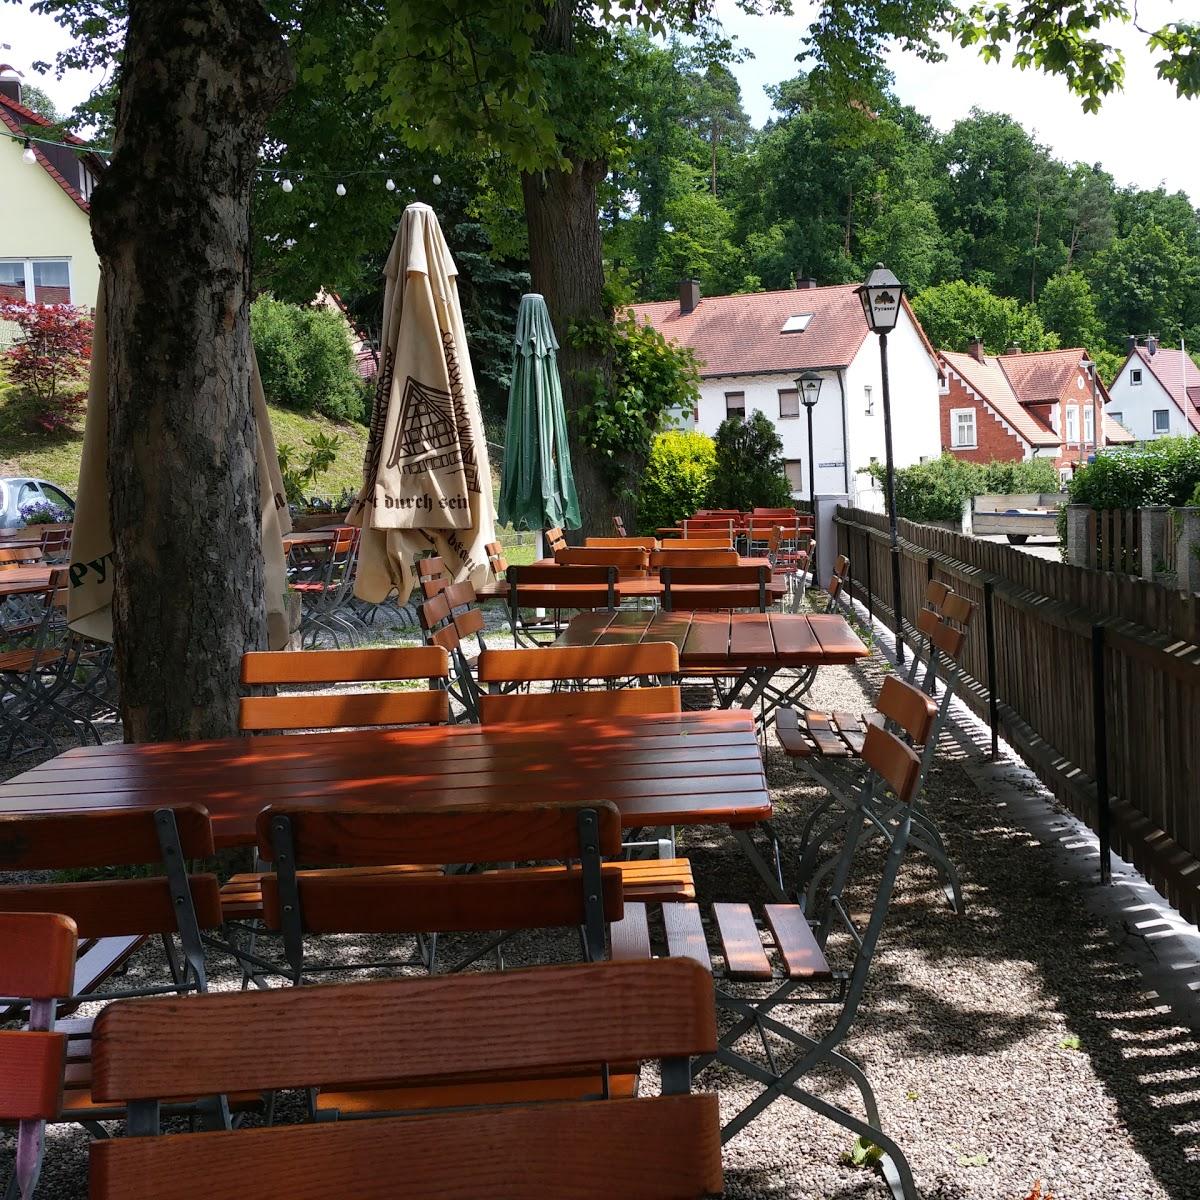 Restaurant "Restaurant Hufer" in  Schwabach